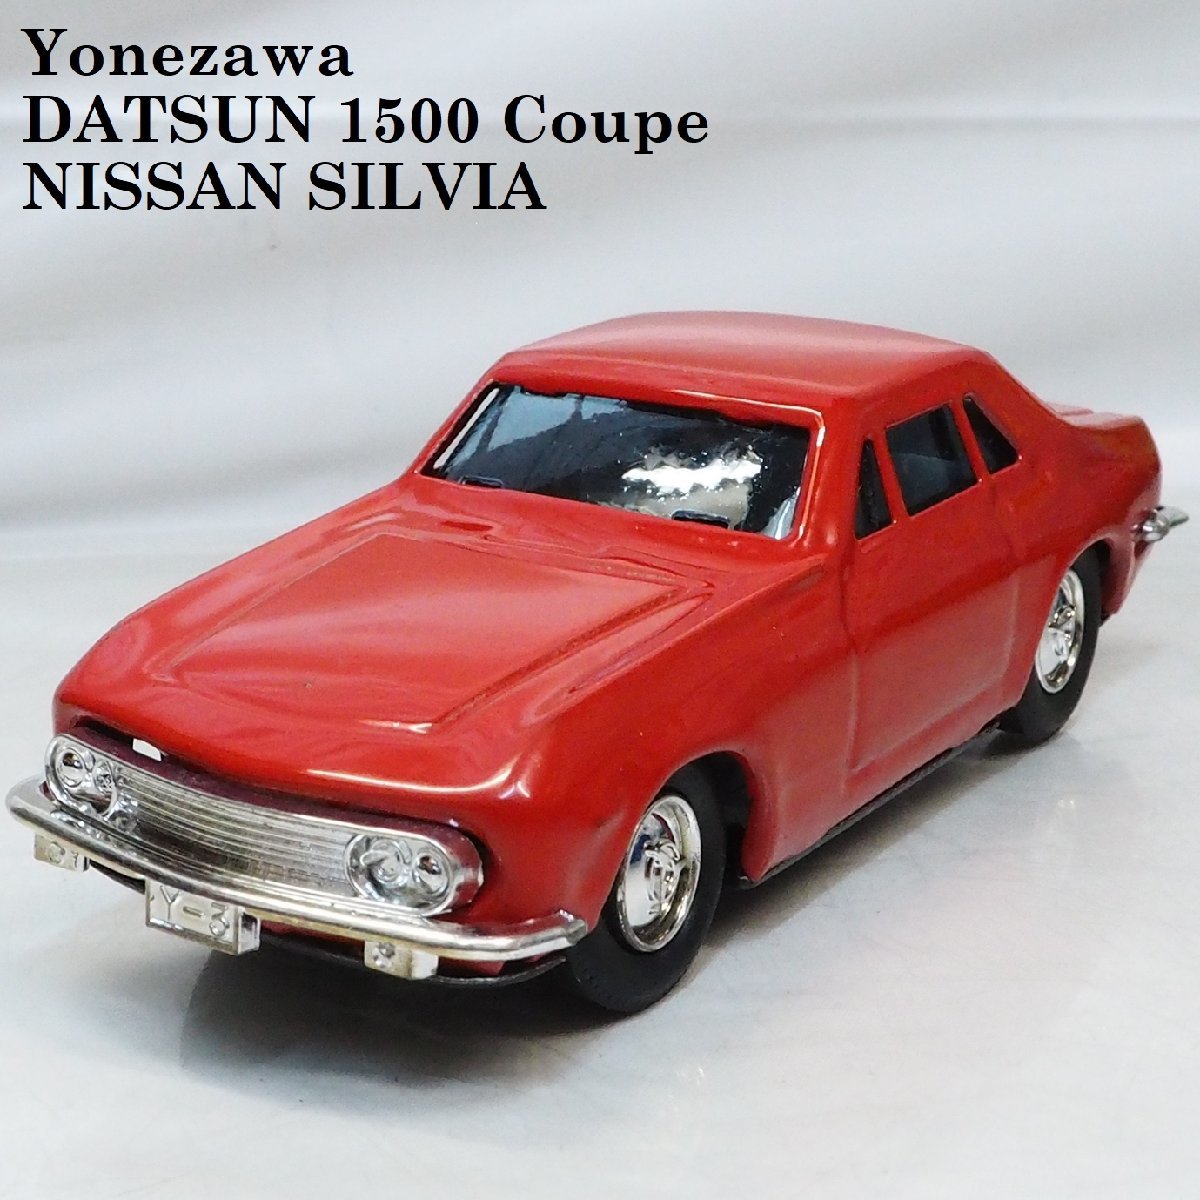 値引きする NISSAN Coupe 1500 Yonezawa【DATSUN SILVIAダットサン car